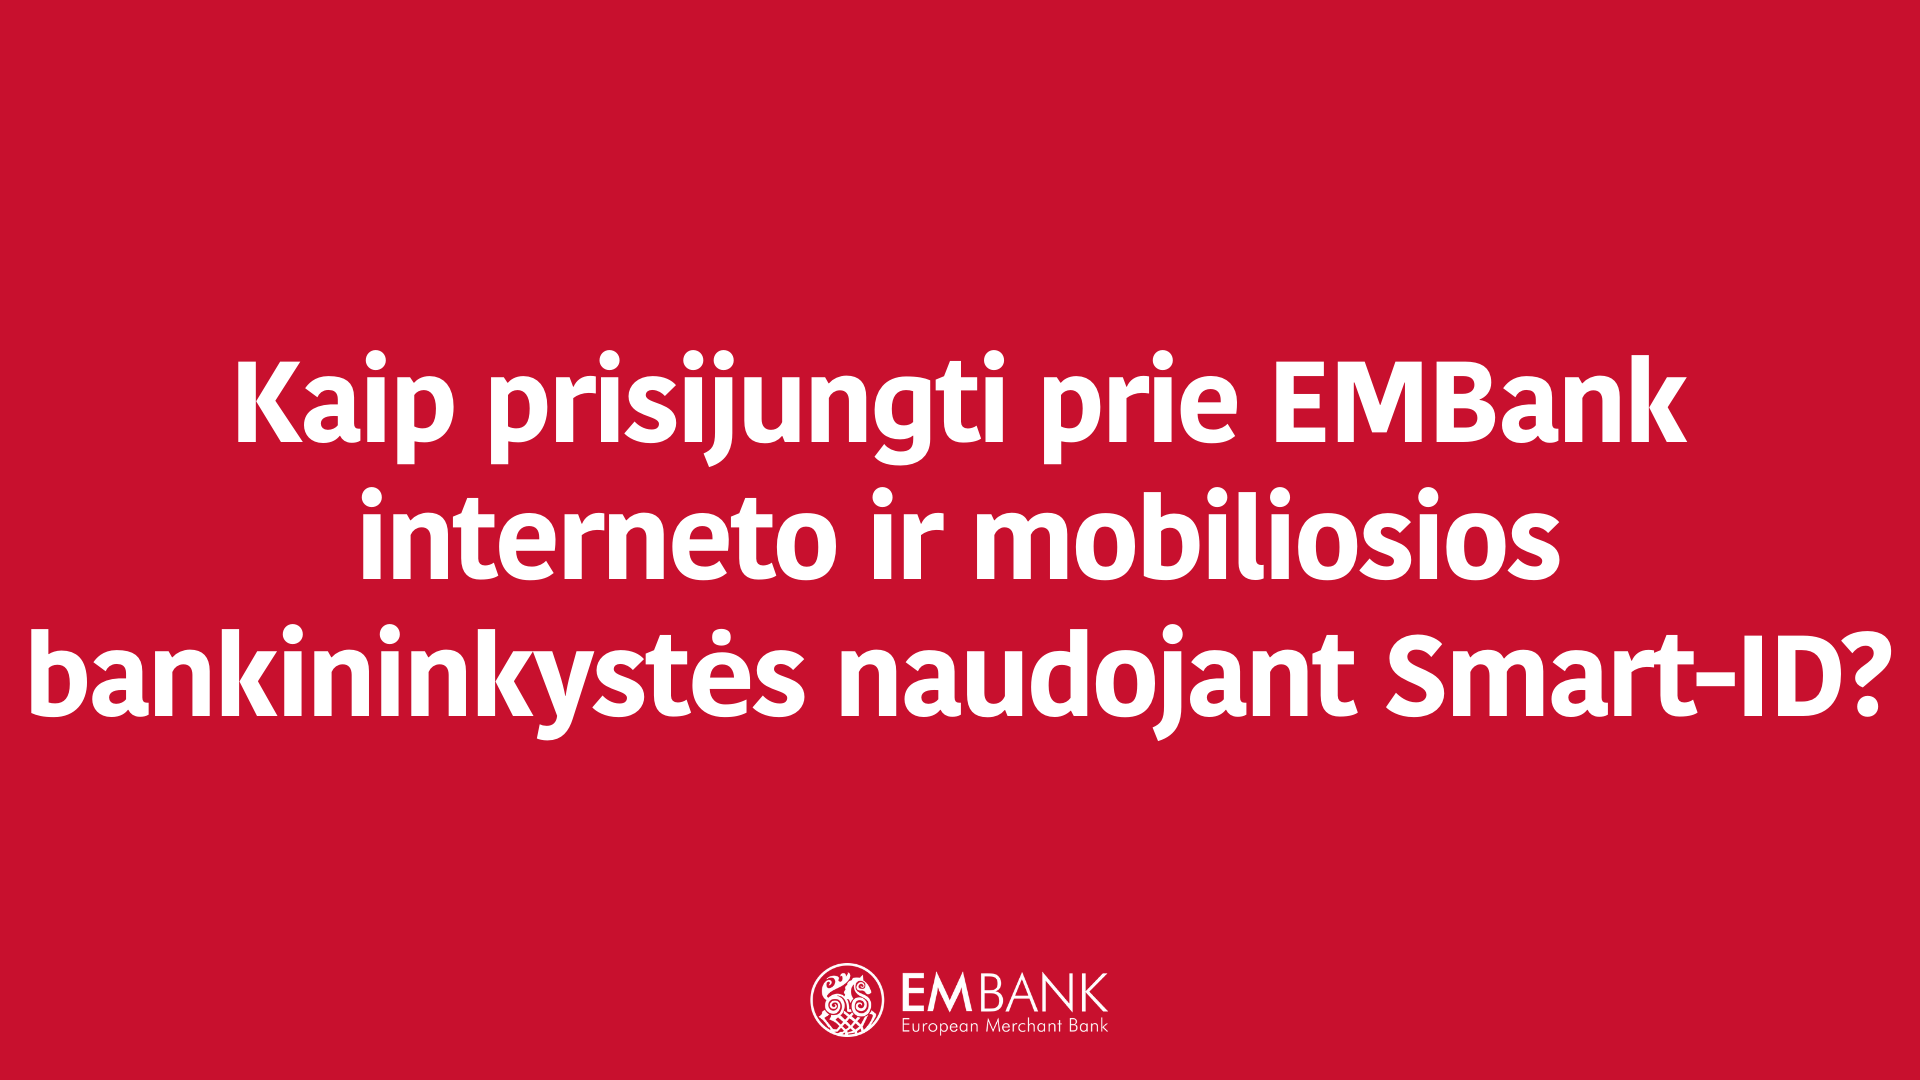 Kaip prisijungti prie EMBank interneto ir mobiliosios bankininkystės naudojant Smart-ID?